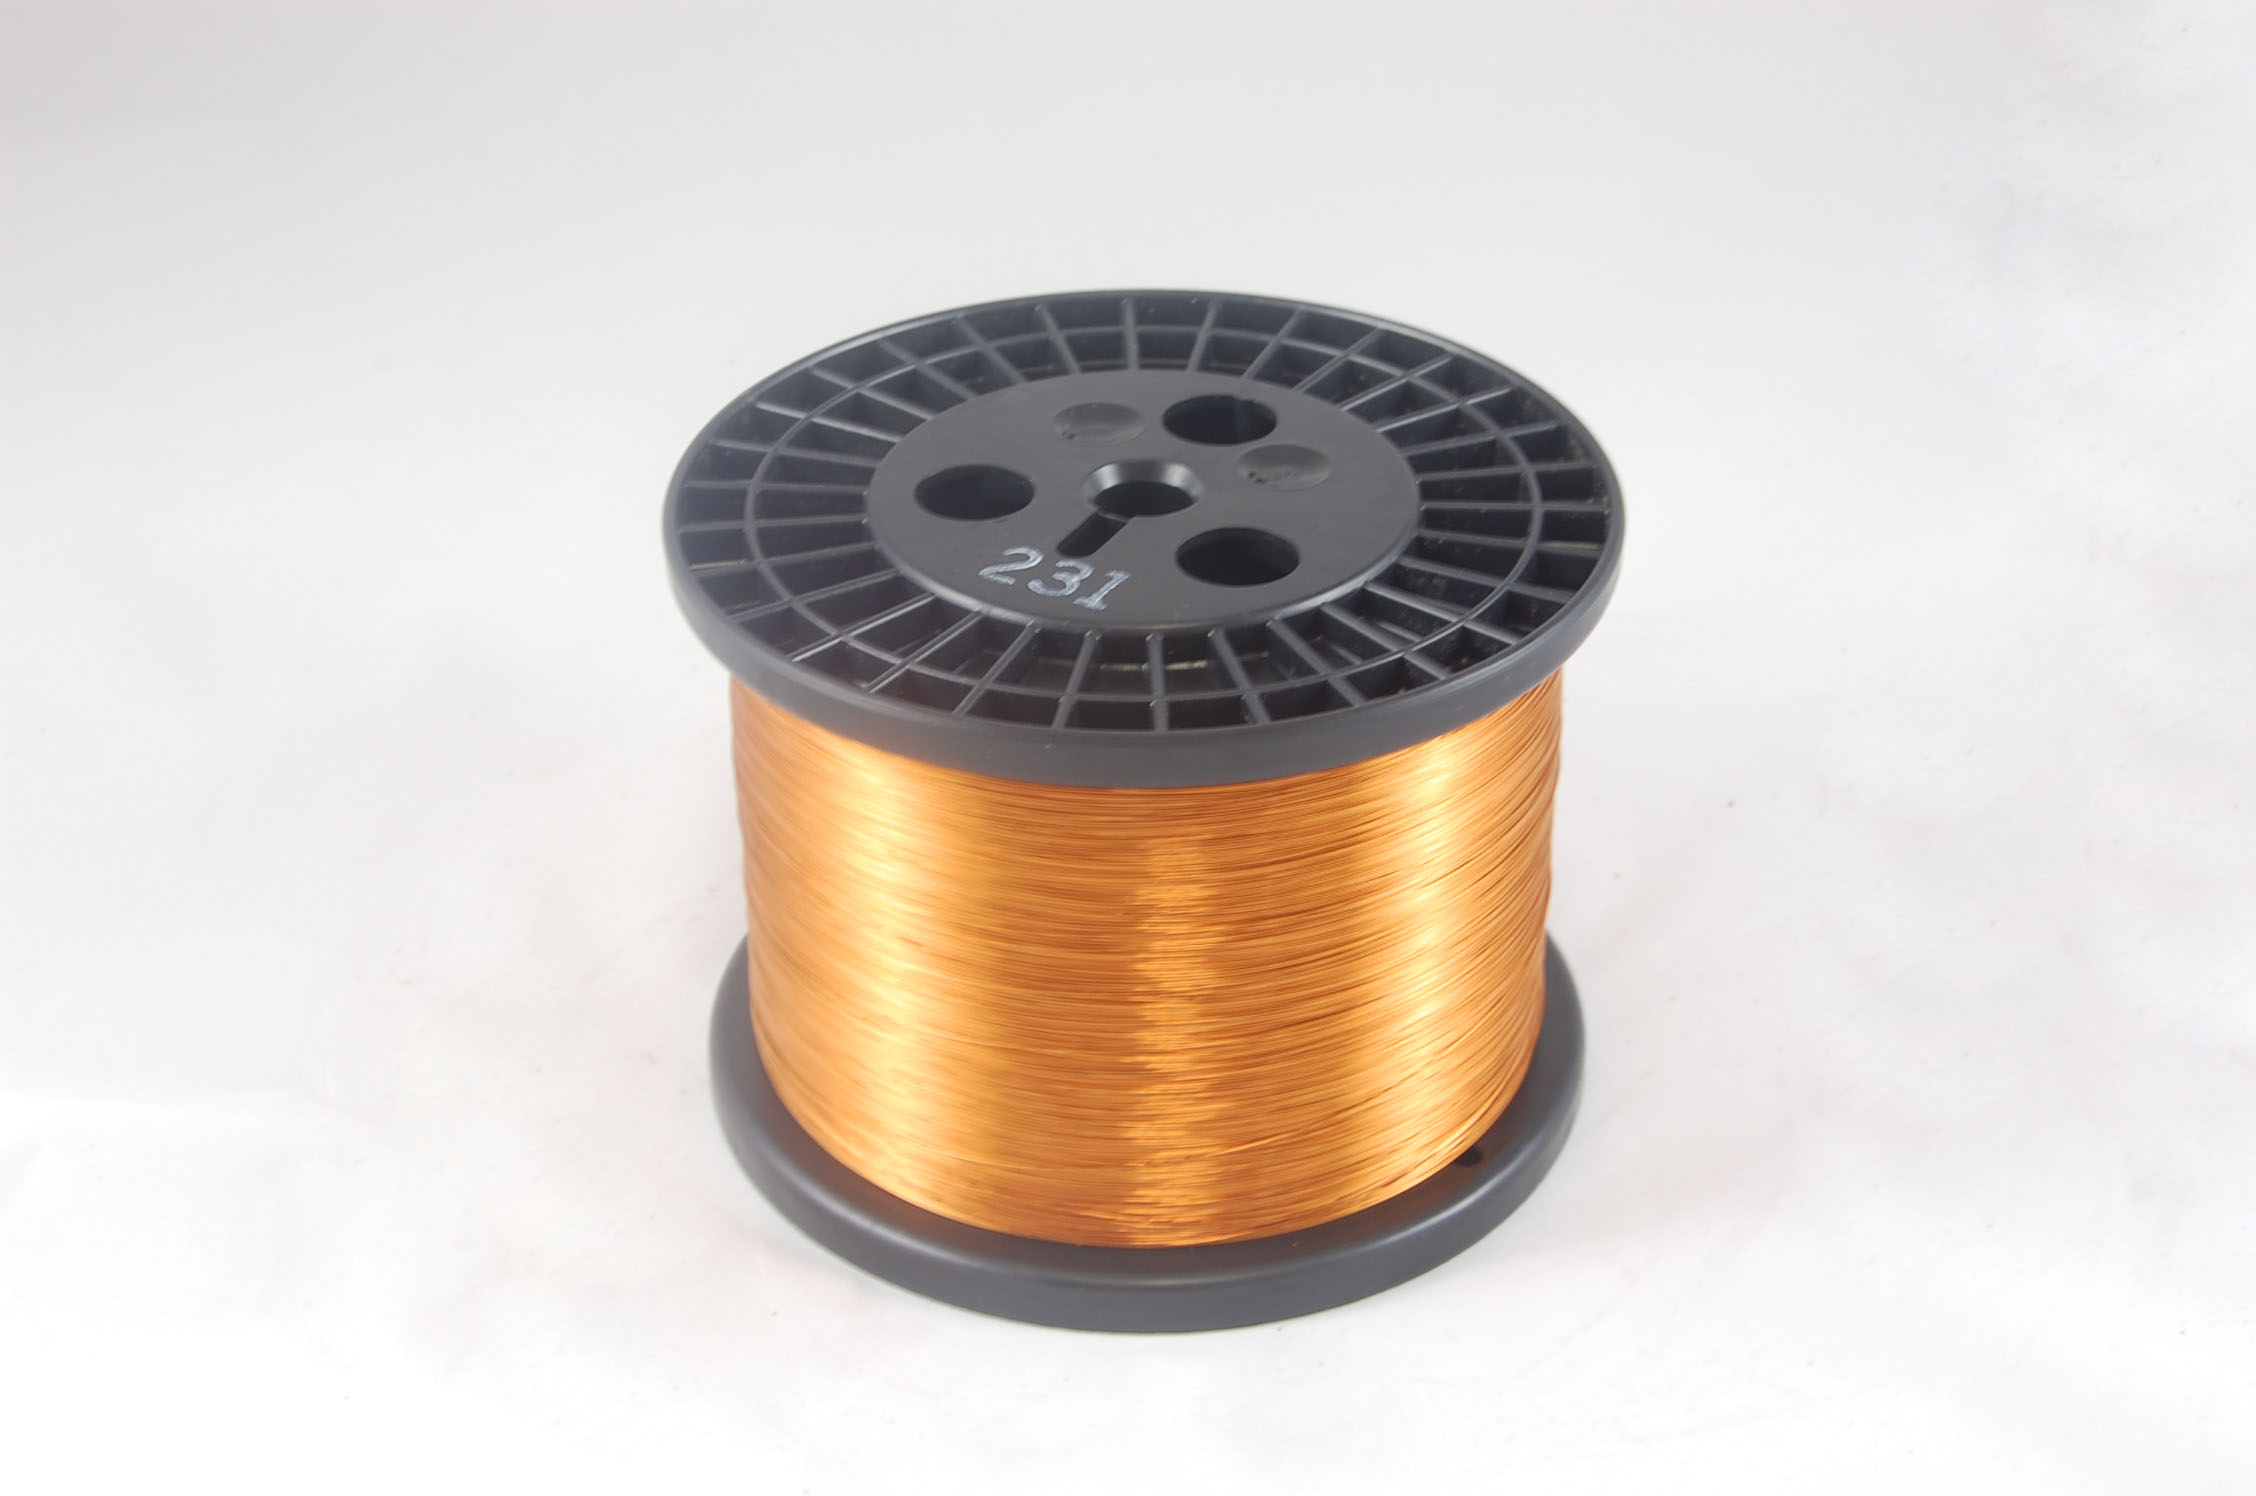 #17 Heavy GP/MR-200 Round MW 35 Copper Magnet Wire 200°C, copper, 10 LB 6" spool (average wght.)